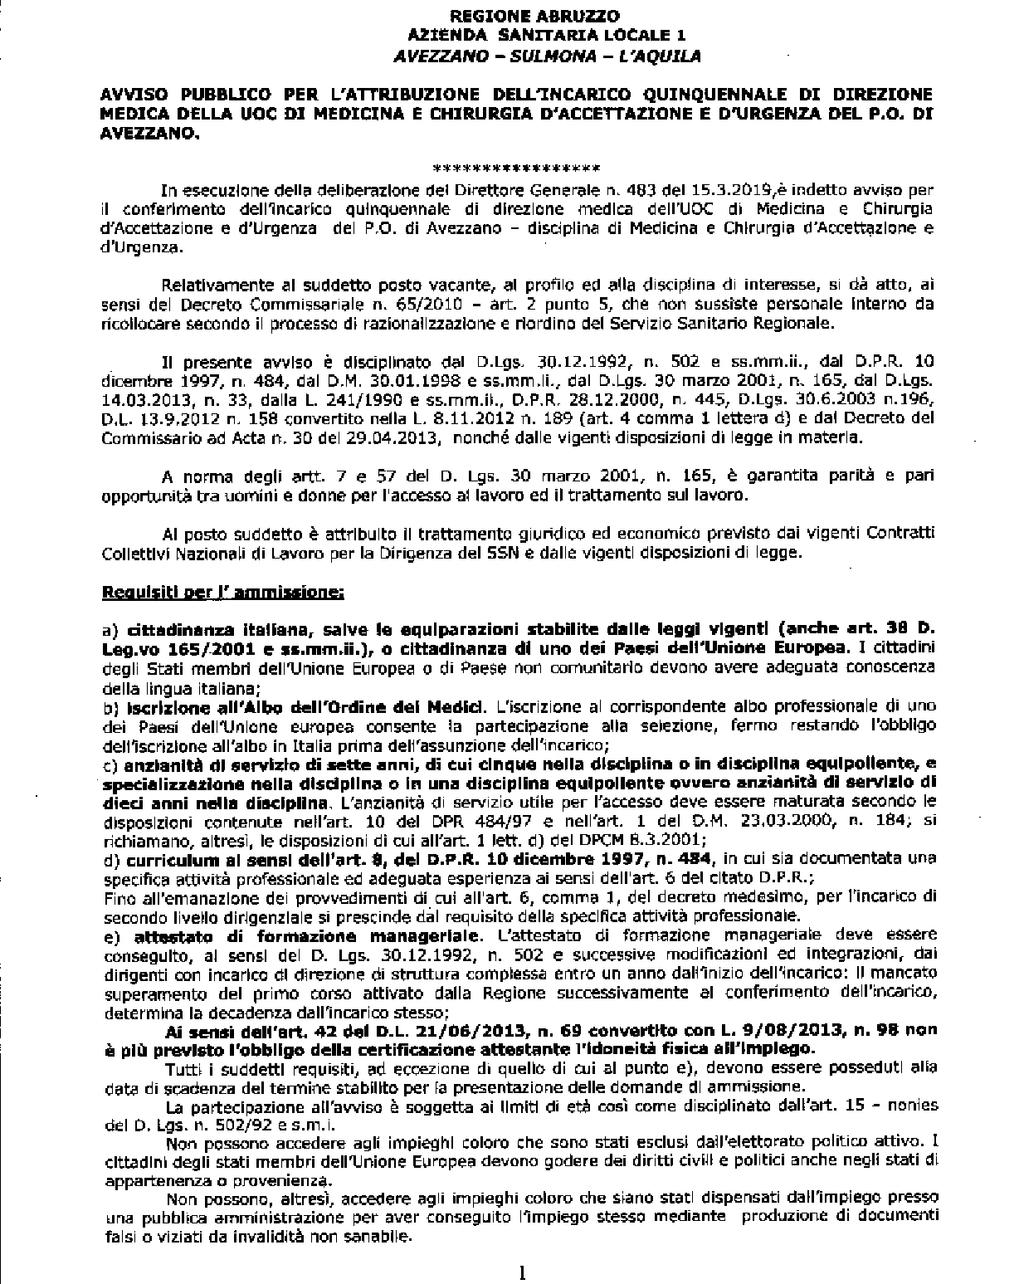 Pag. 4 Bollettino Ufficiale della Regione Abruzzo Anno XLIX - N. 76 Speciale (10.05.2019) PARTE II Leggi, Regolamenti, Atti della Regione e dello Stato AVVISI, CONCORSI, INSERZIONI ASL N.